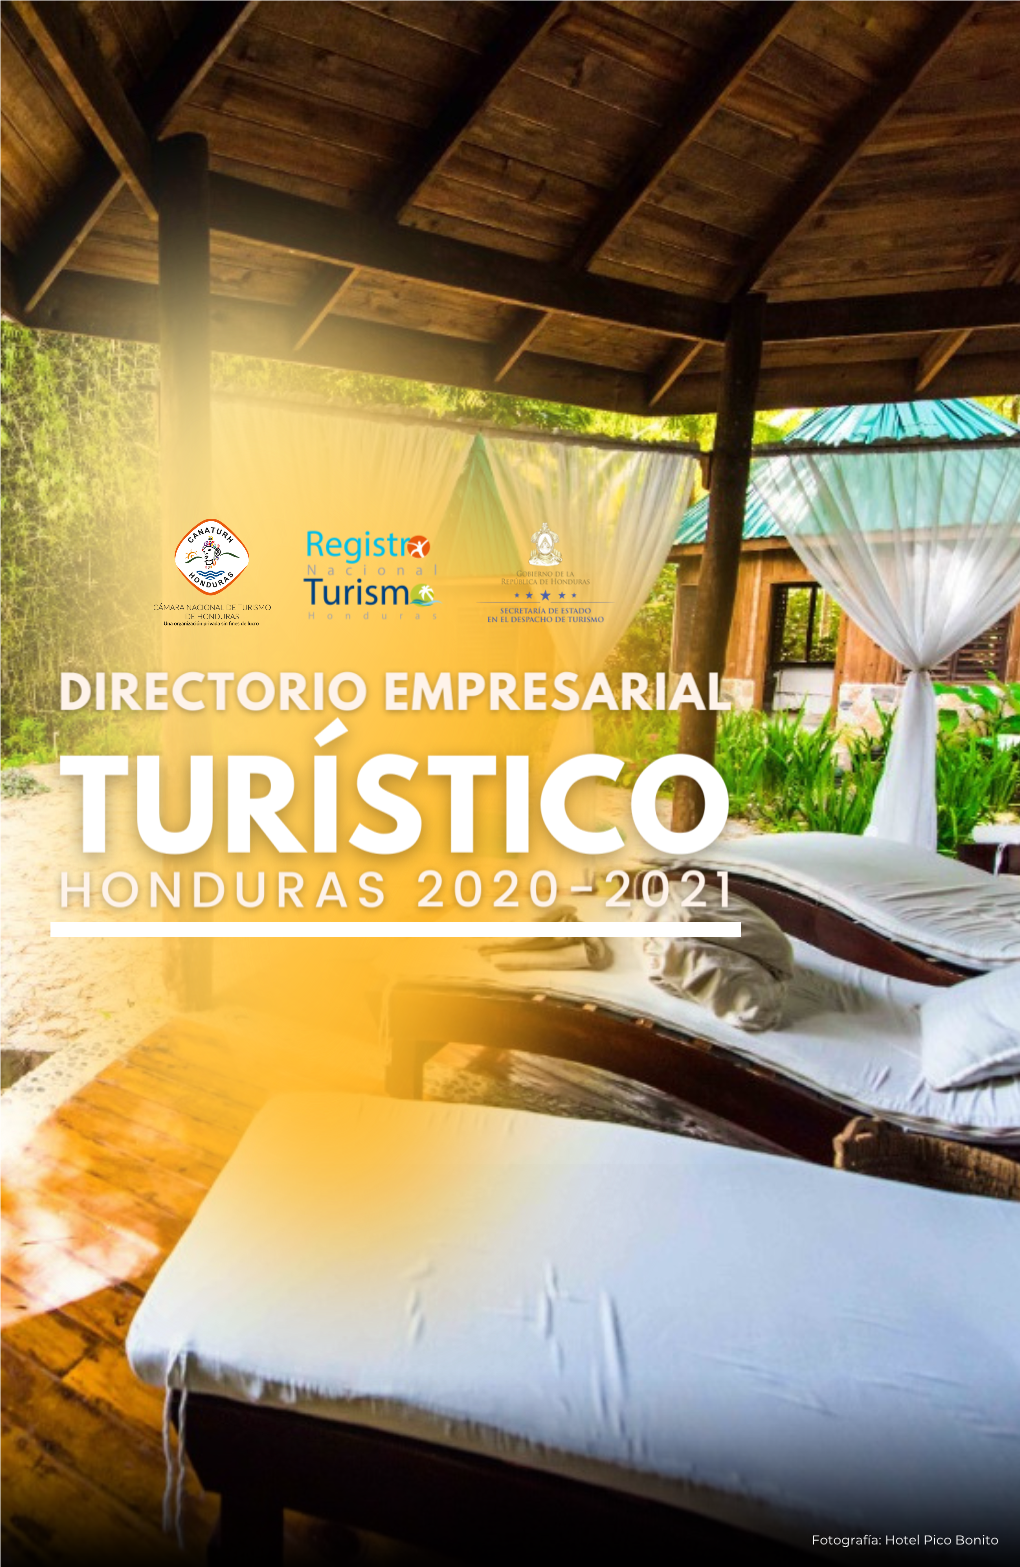 Hotel Pico Bonito Cámara Nacional De Turismo De Honduras (CANATURH) Es La Organización Líder En Representación Del Sector Privado Turístico En Honduras